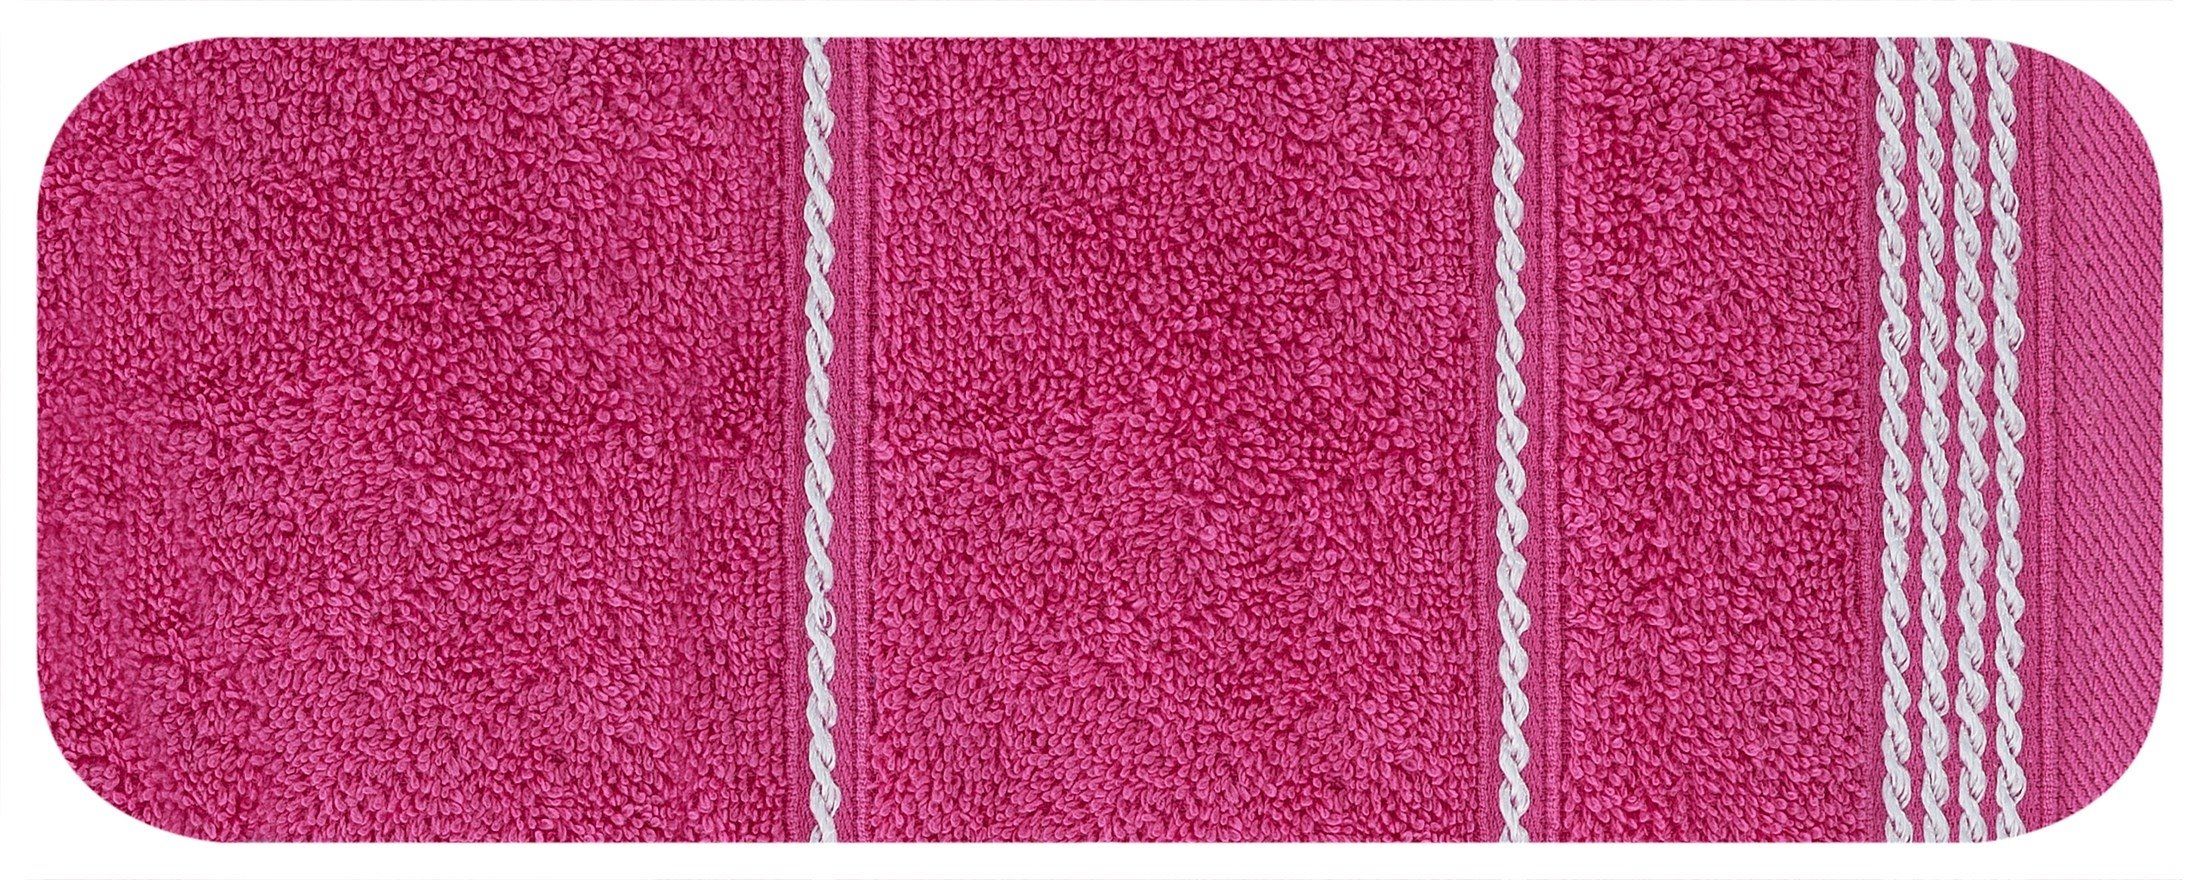 Ręcznik 70x140 różowy frotte 500 g/m2